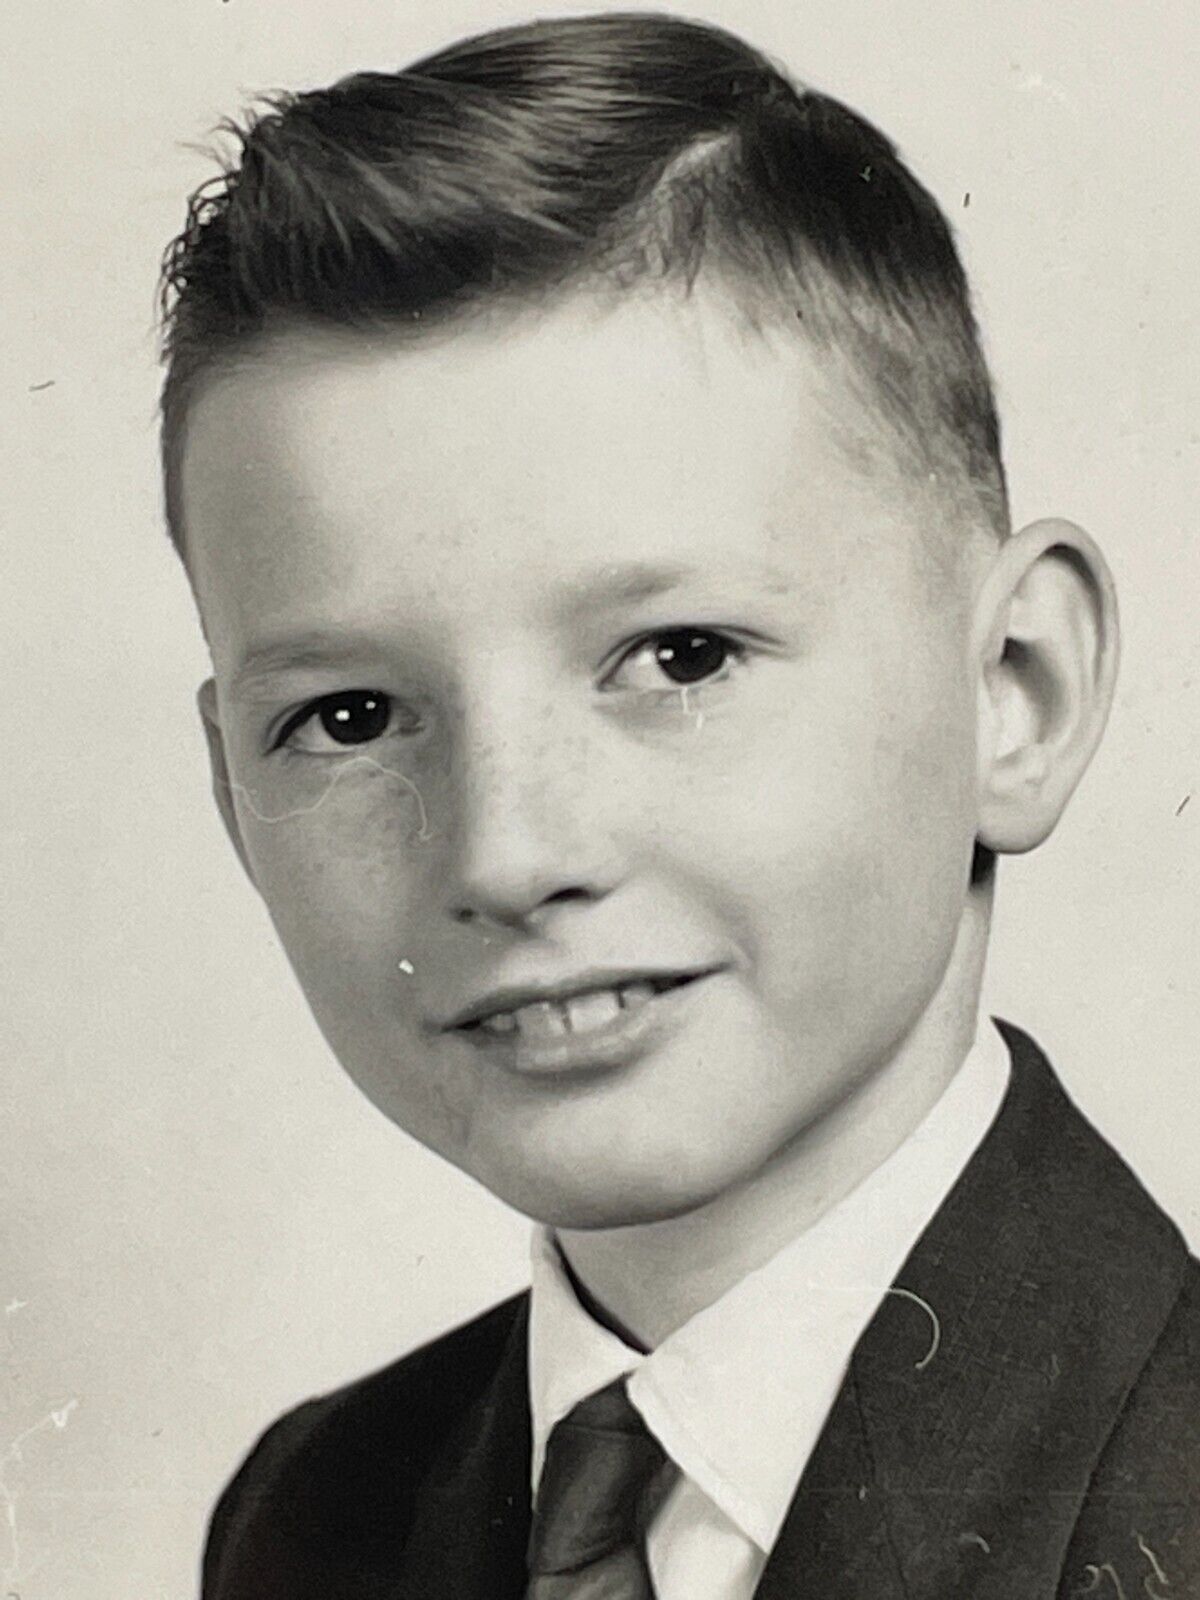 NF Photograph Boy School Class Photo 1950-60's Portrait